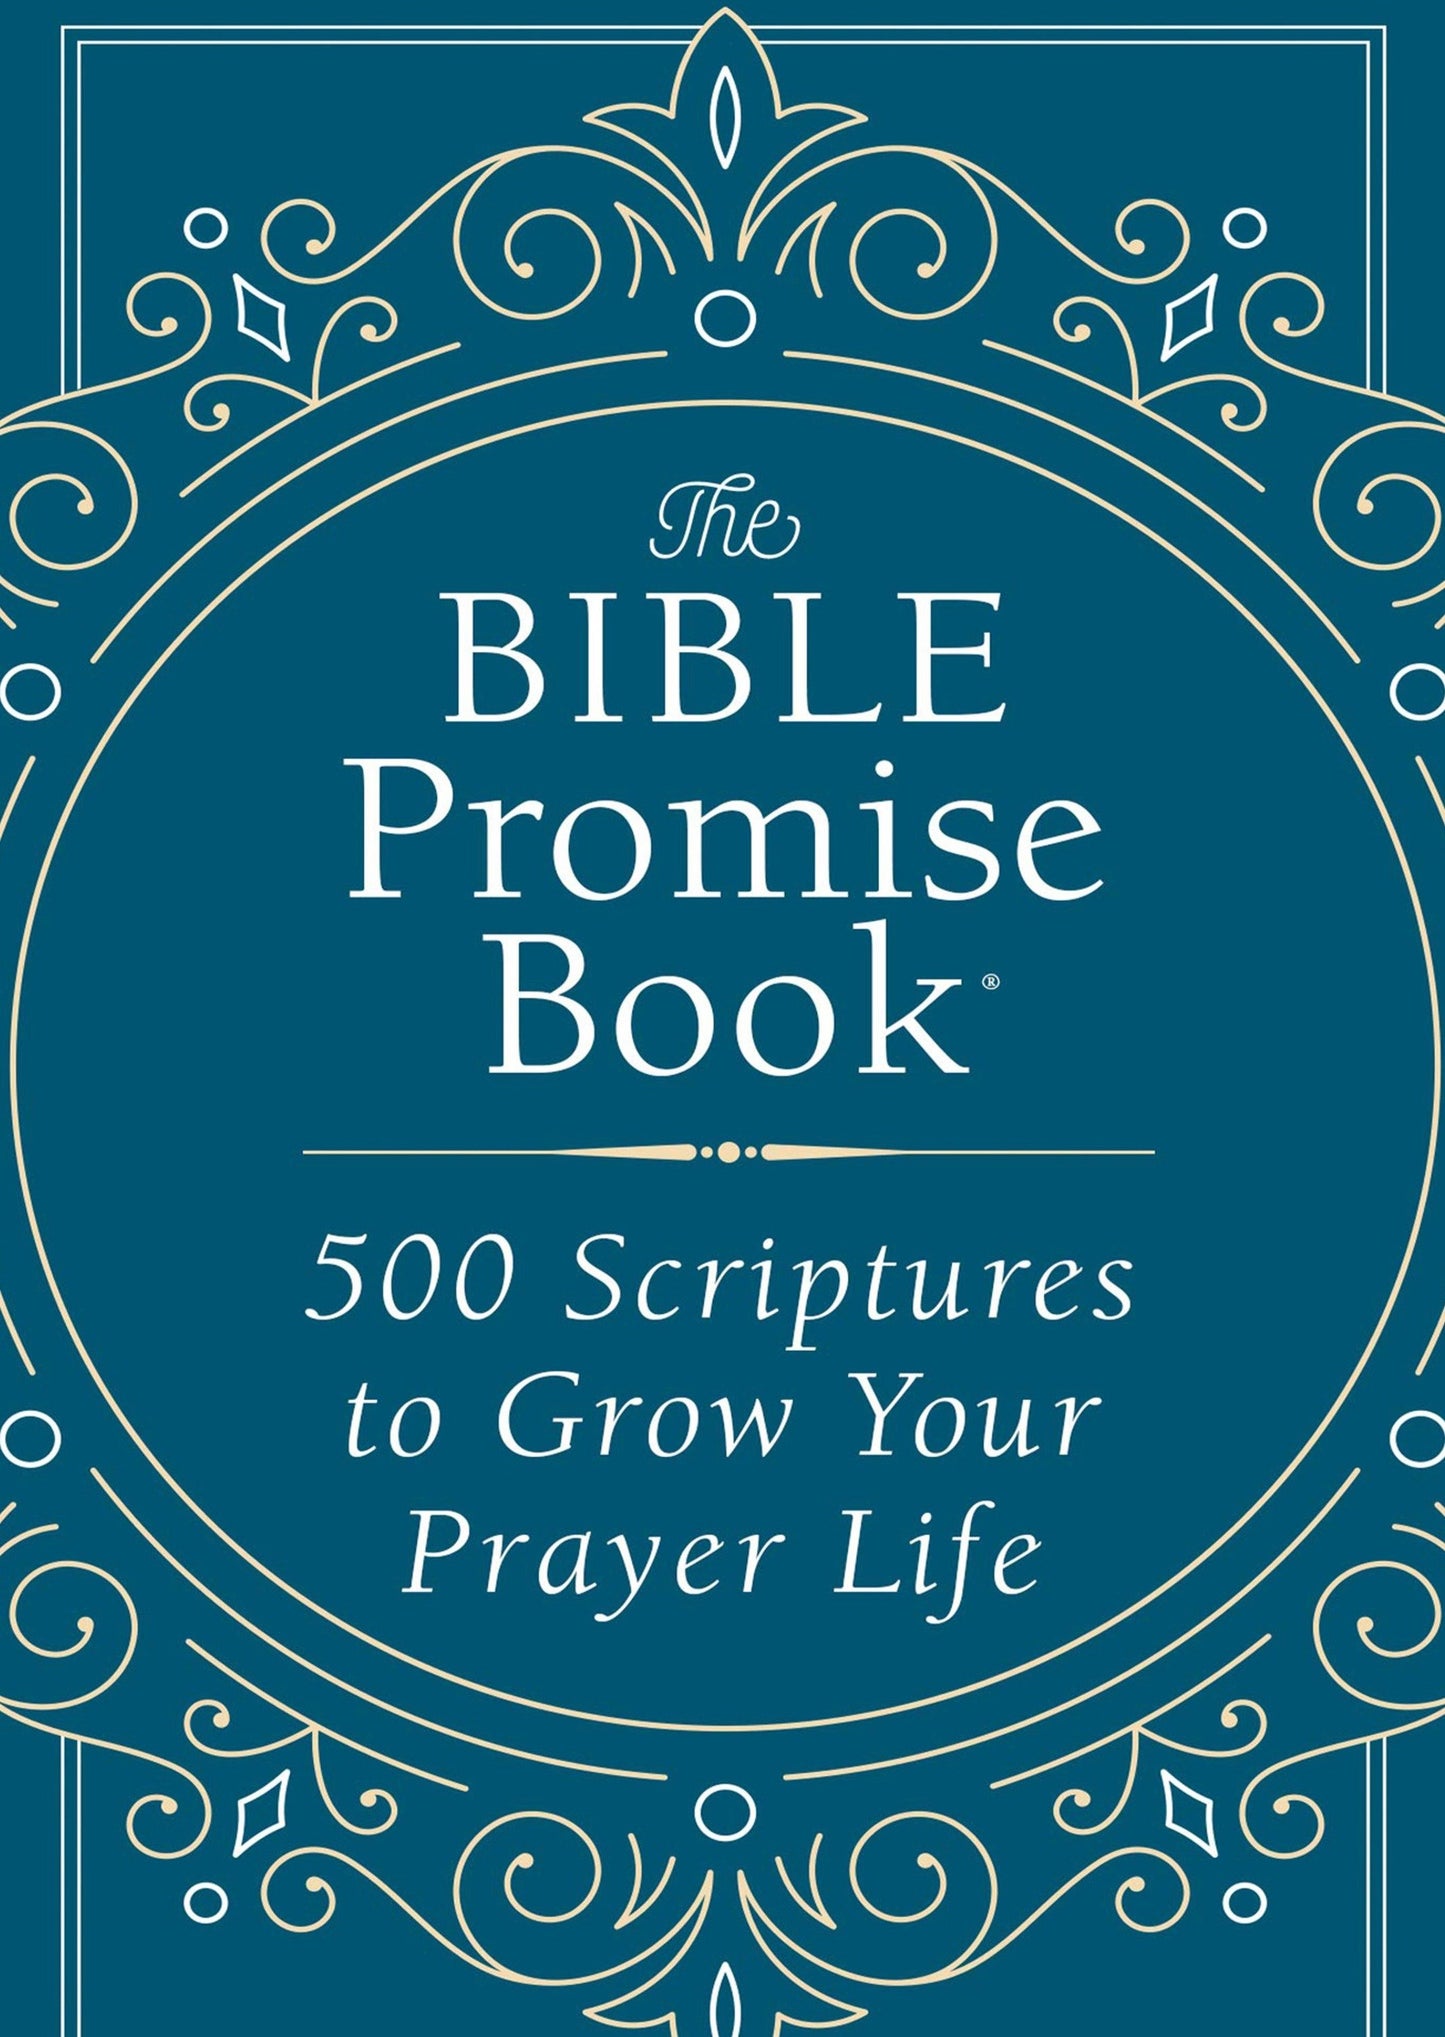 KJV Bible Promises 500 Scriptures Accessories Barbour Publishing Inc.